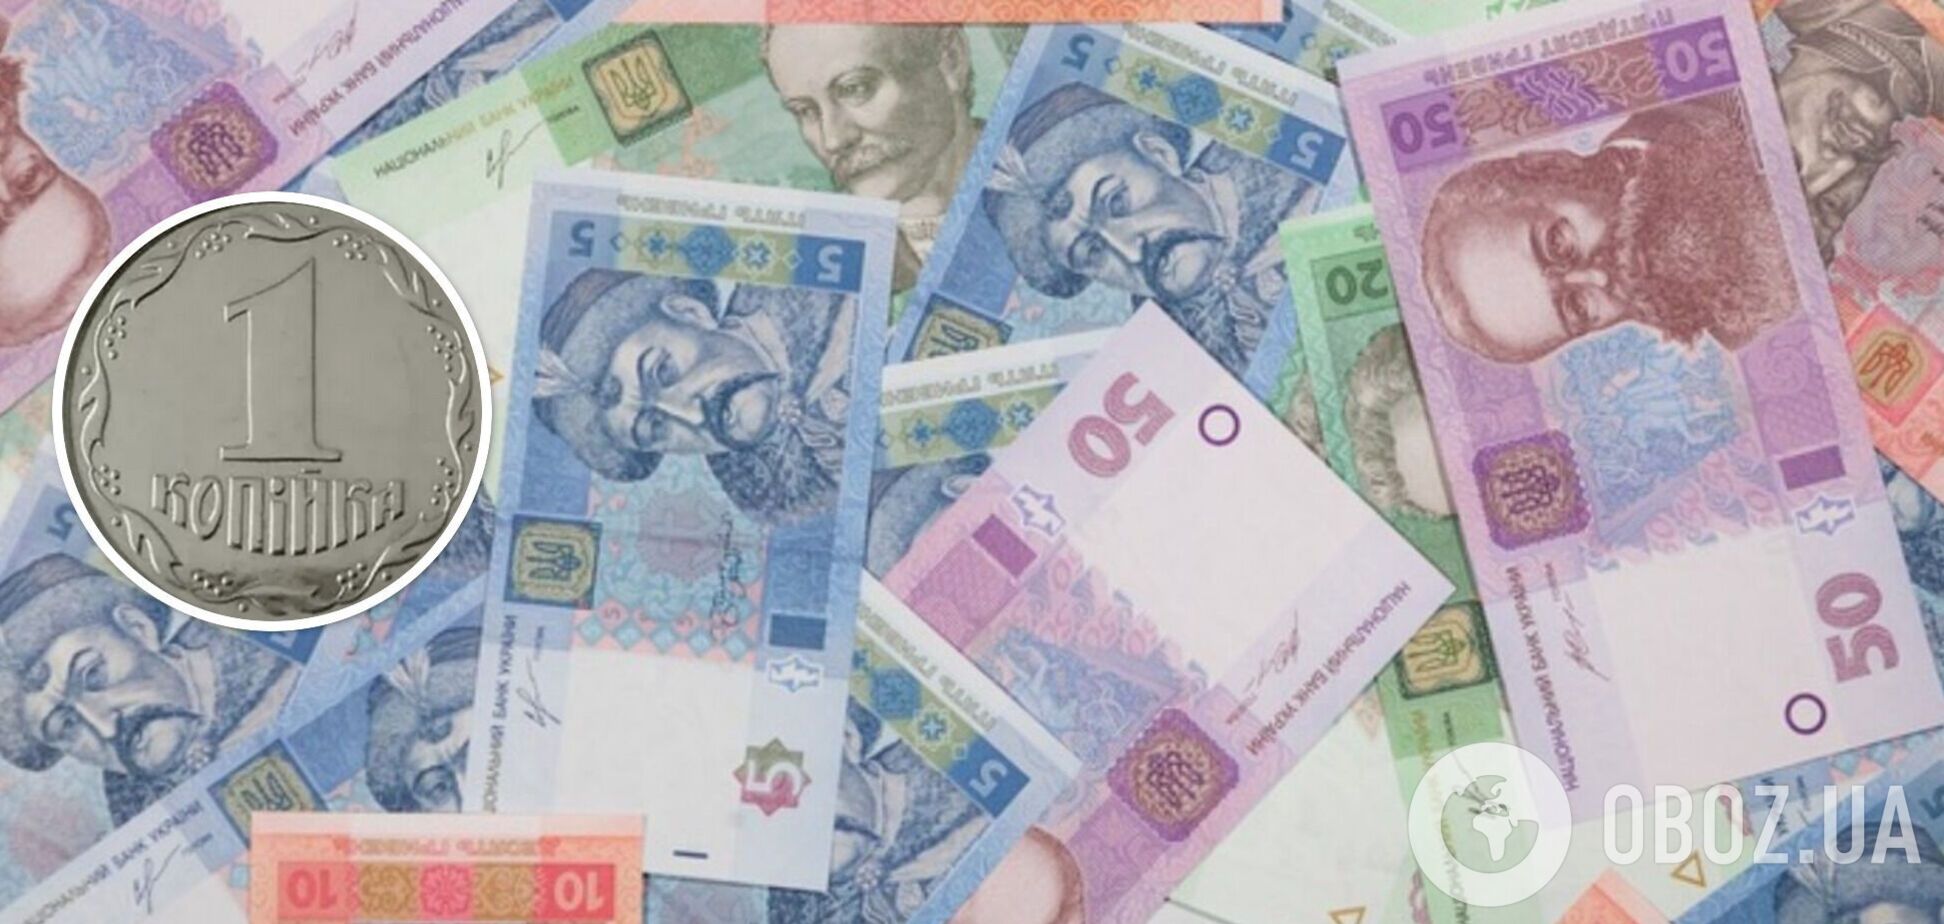 Украинцы могут хорошо заработать на монетах из копилки